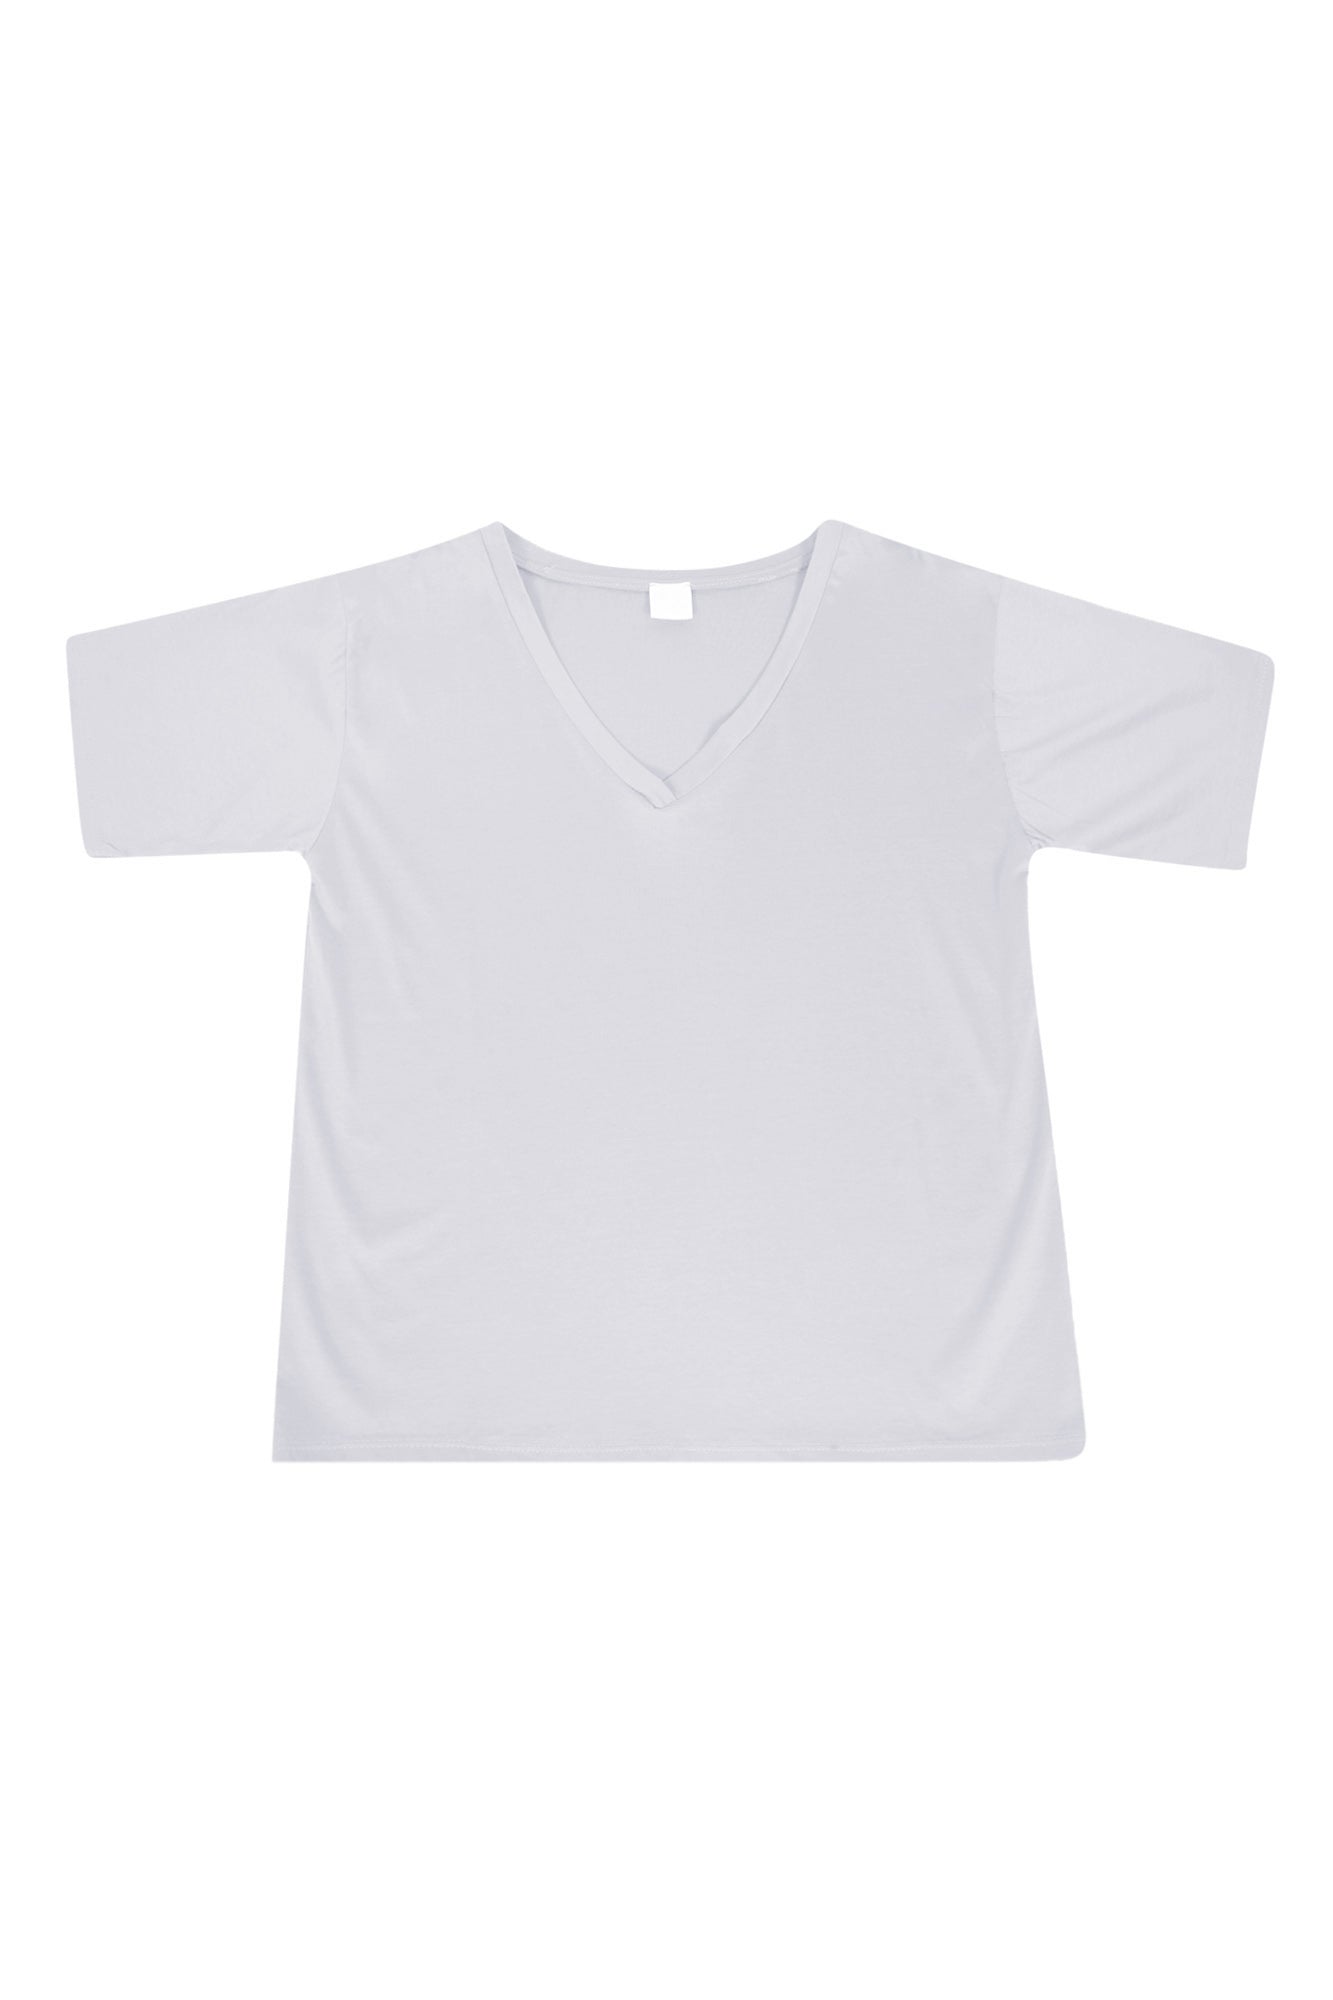 La Femme Blanche - T-shirt - 431581 - Bianco